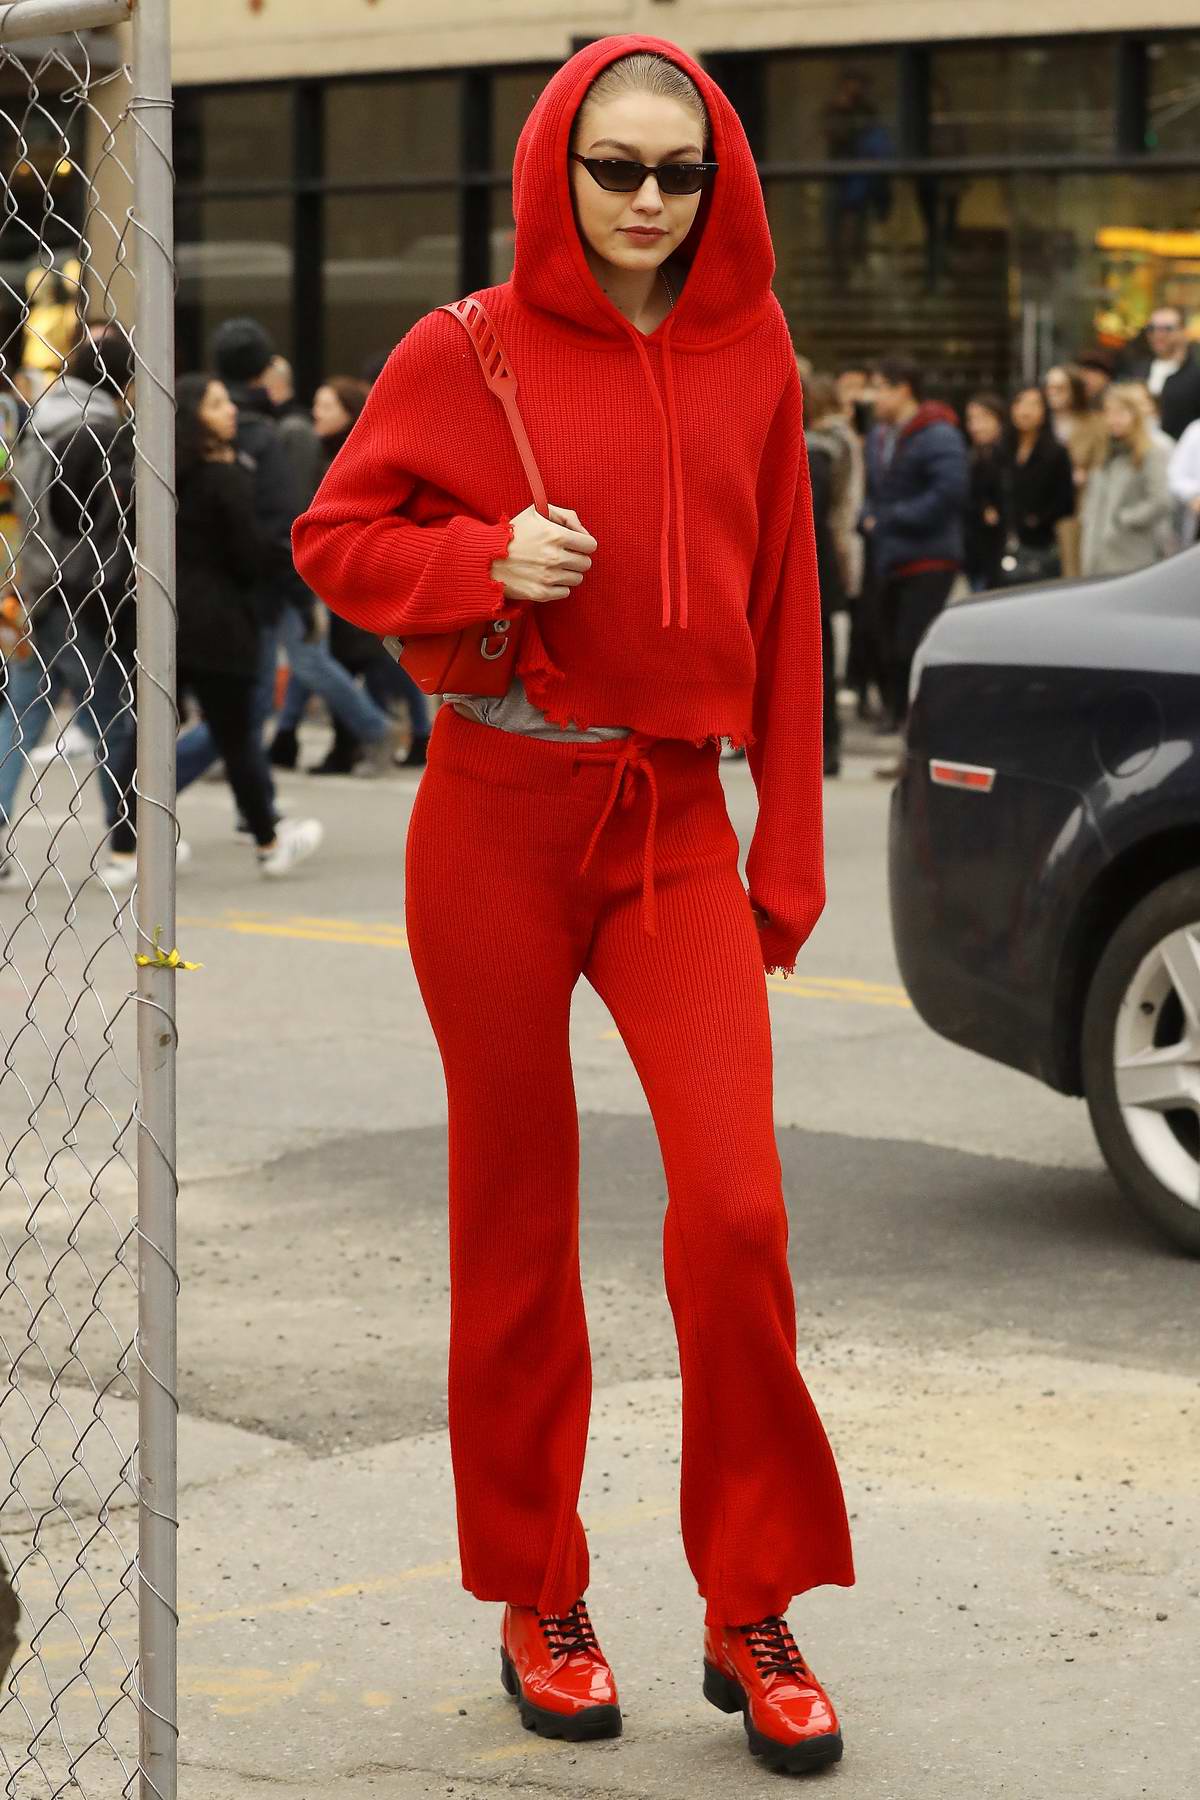 Gigi Hadid rocks an all red ensemble as she visits Louis Vuitton